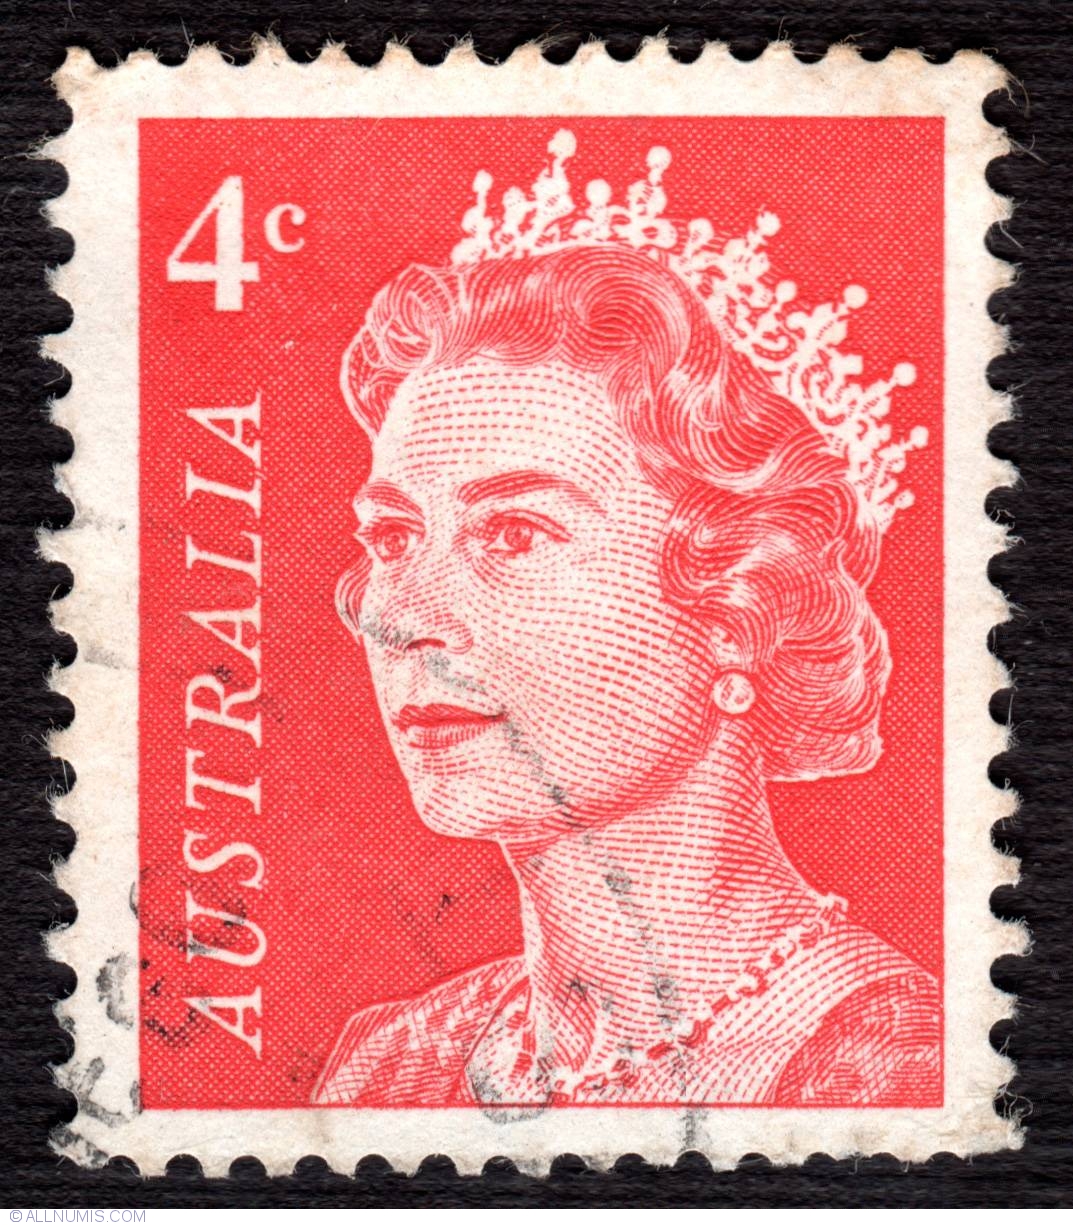 4 Cent - Queen Elizabeth II, 1966 - Australia - Stamp - 6093